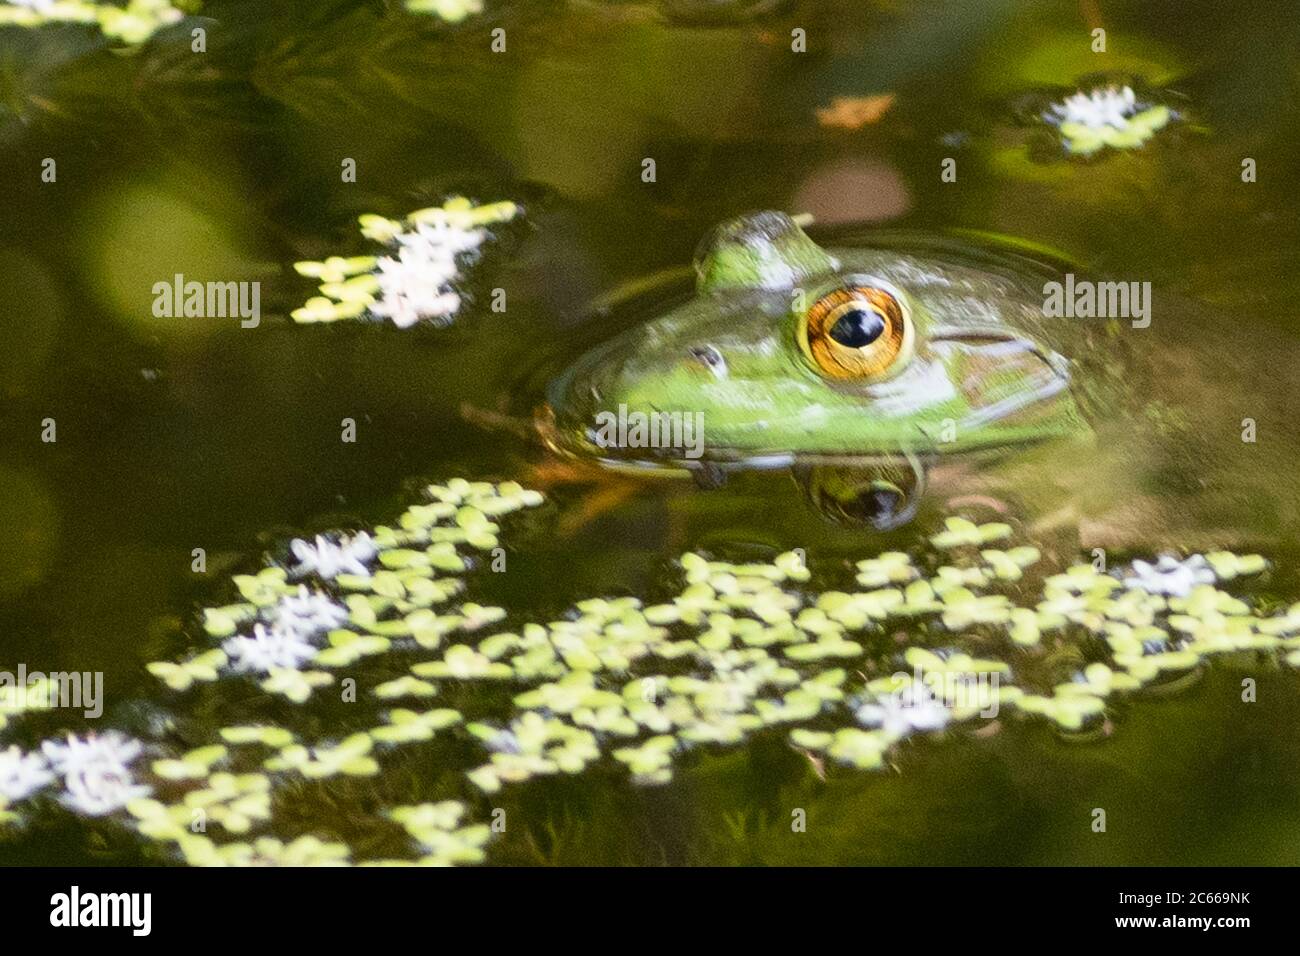 Froschauge reflektiert, während die Amphibie geduldig wartet, bis das Abendessen in den auffallenden Bereich kommt. Stockfoto